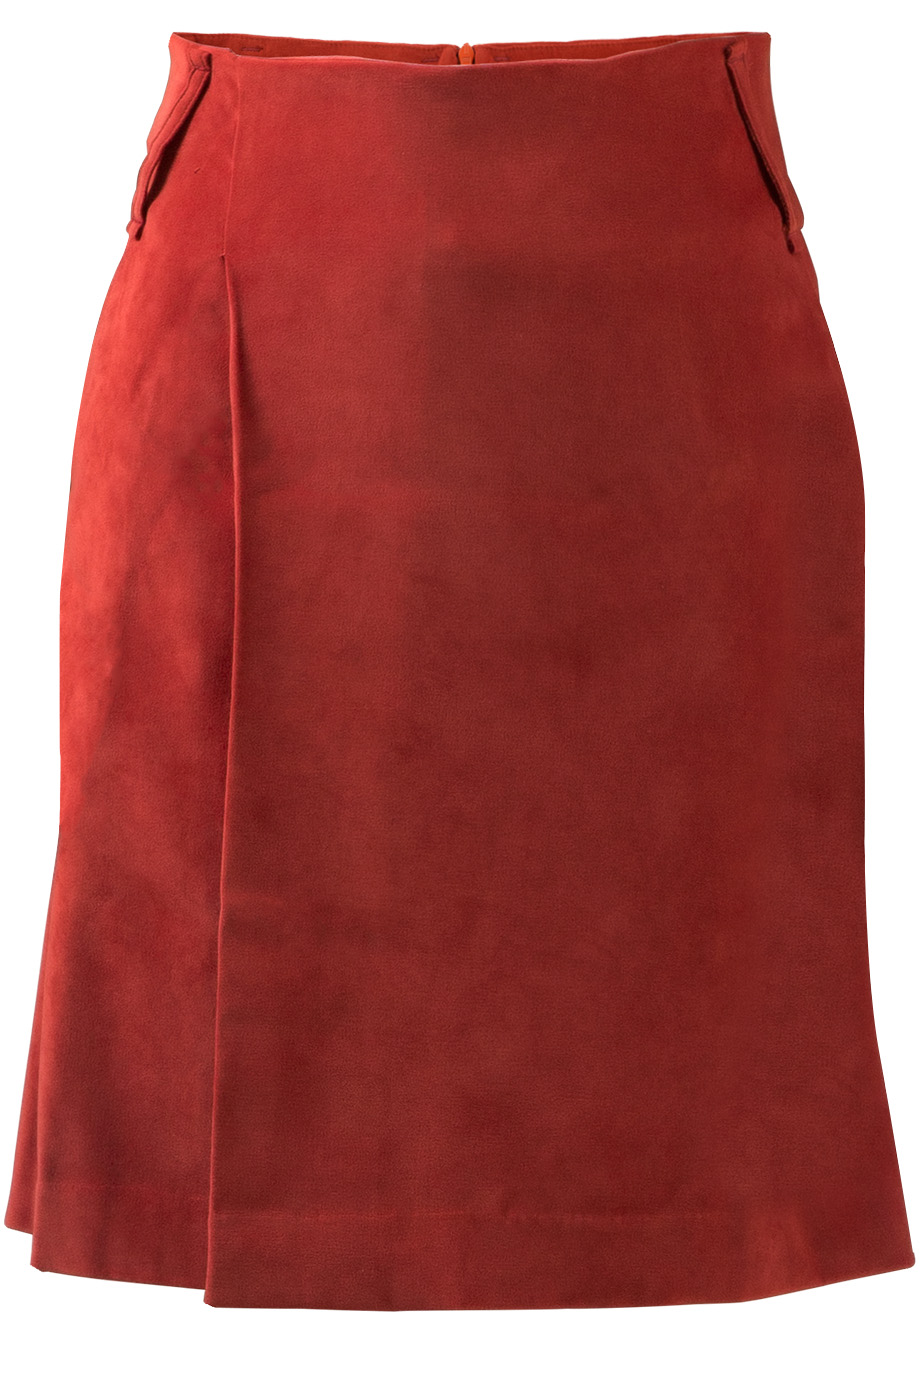 Chân váy da lộn Ava Skirt/ Red